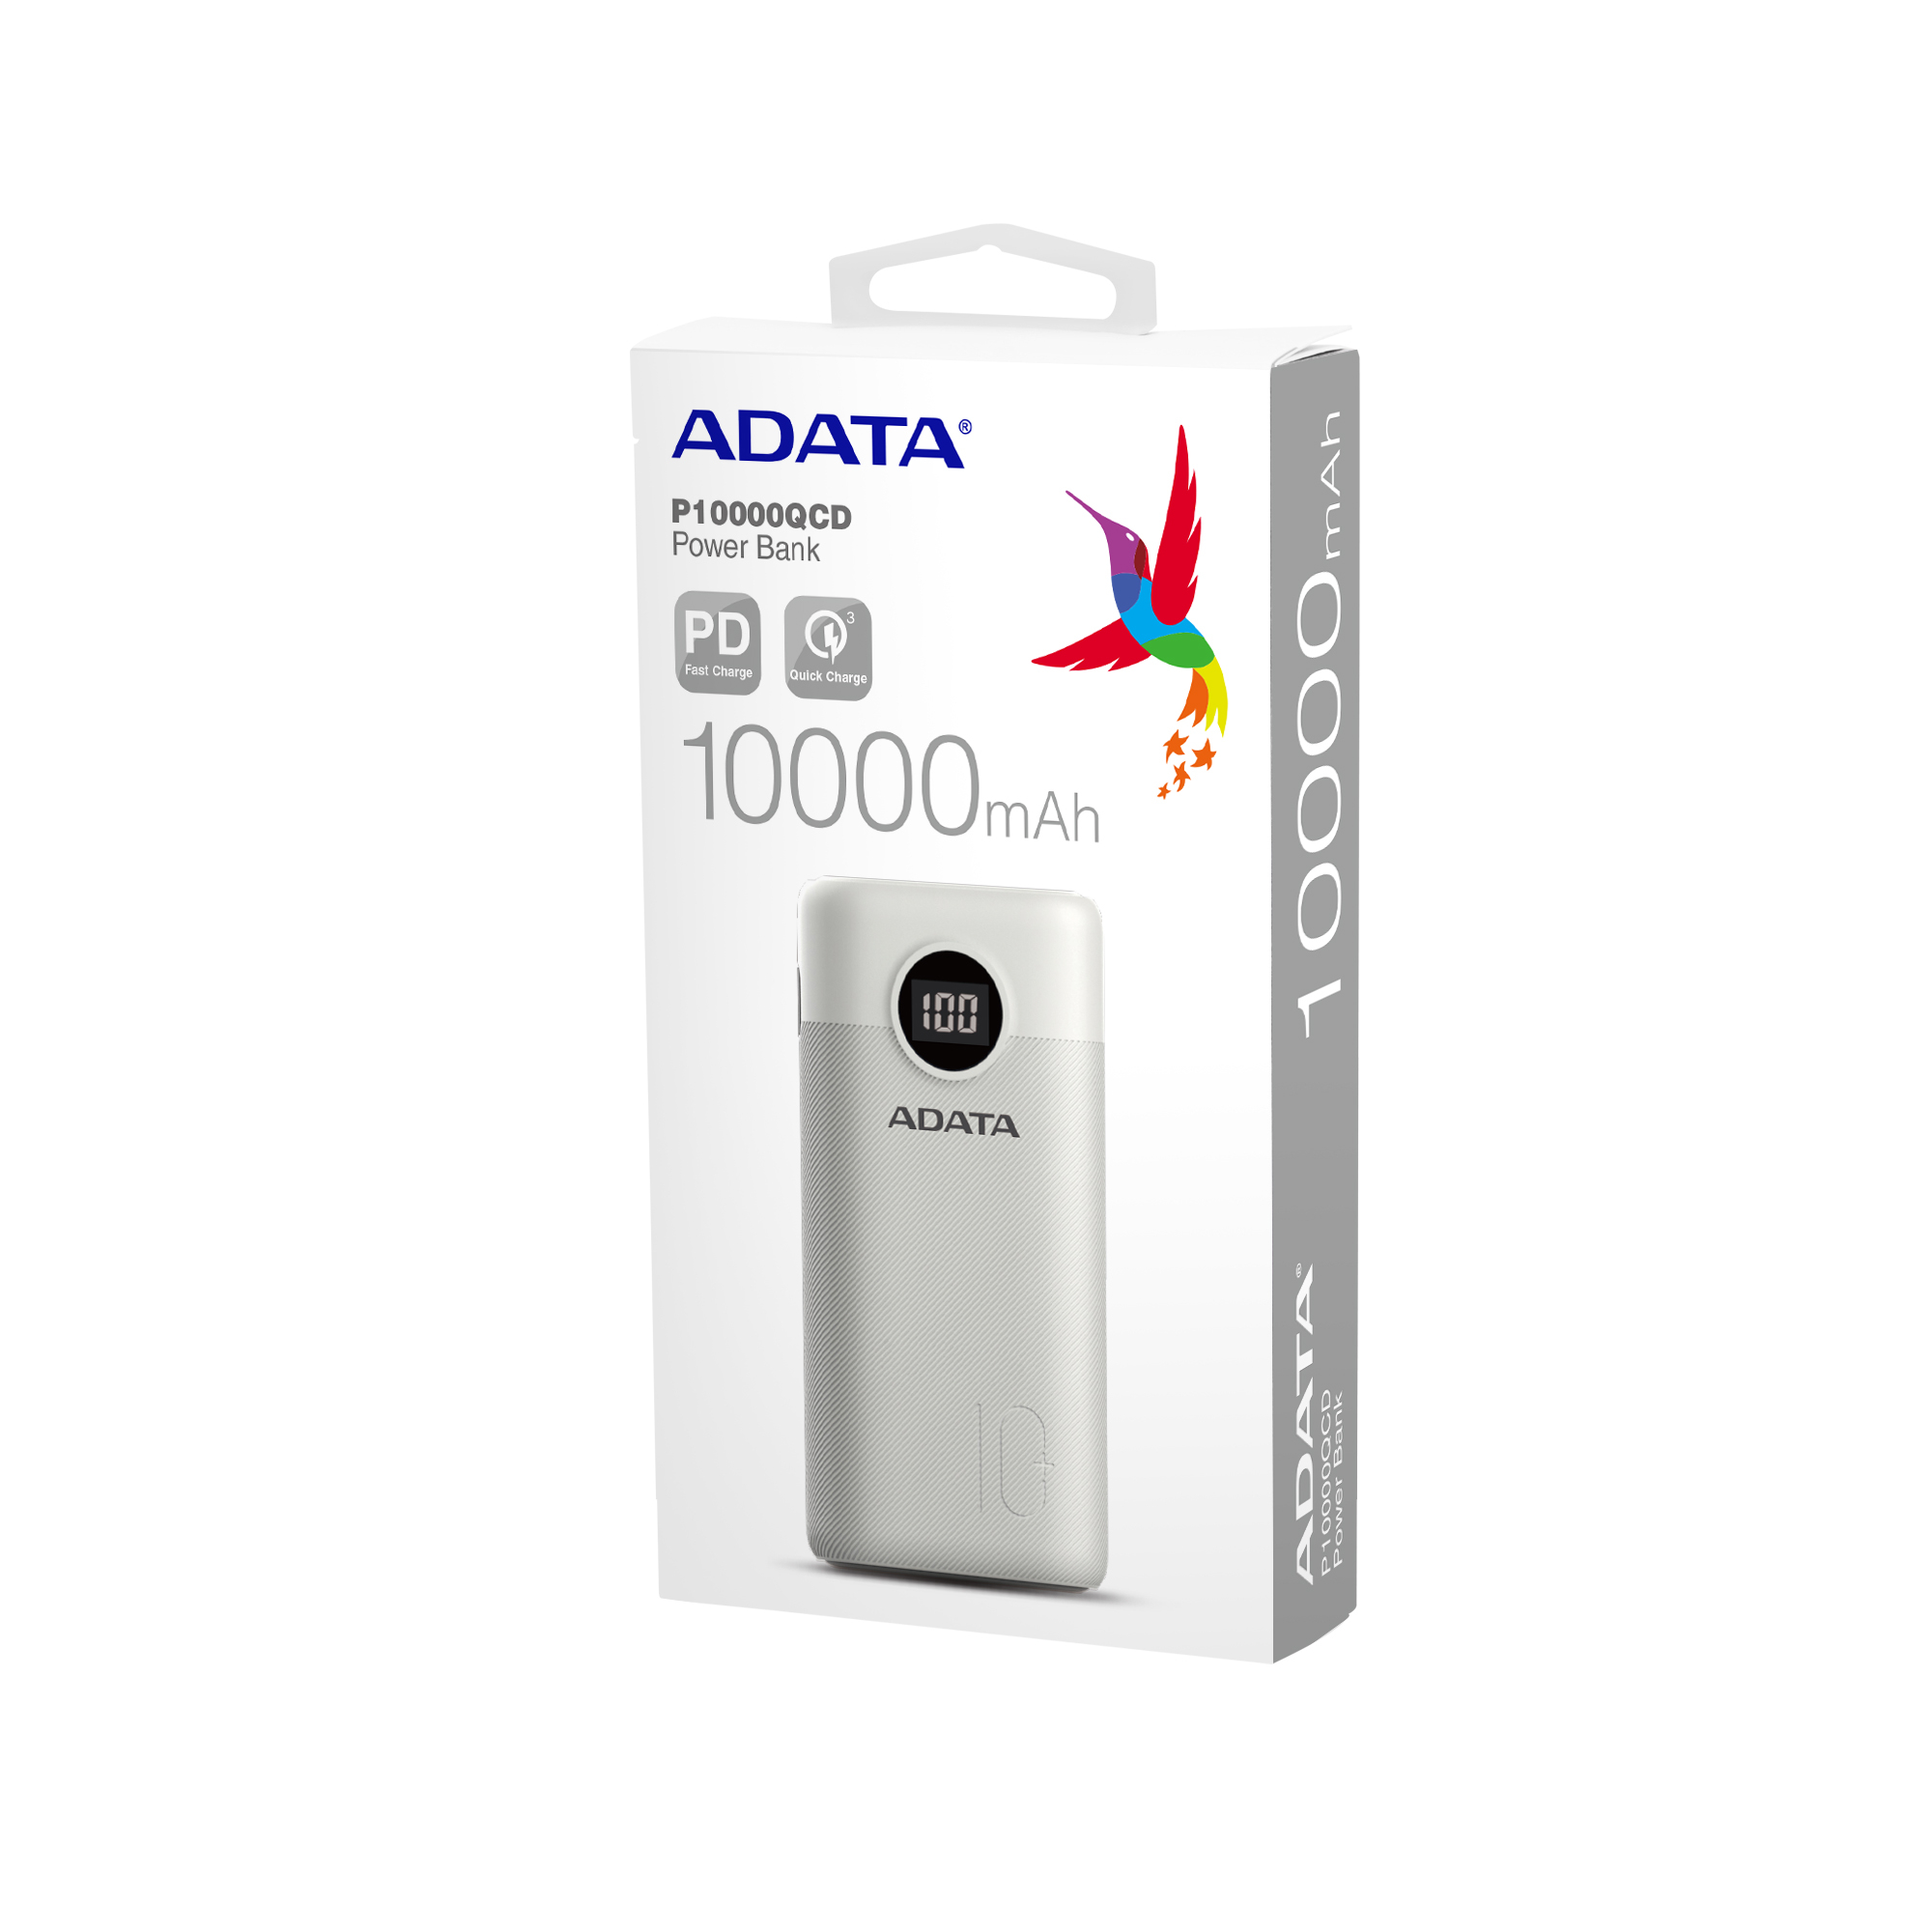 ADATA Powerbank Digital Batería Portátil P1000QCD, 10,000 mAh, Carga Rápida, Color Blanco